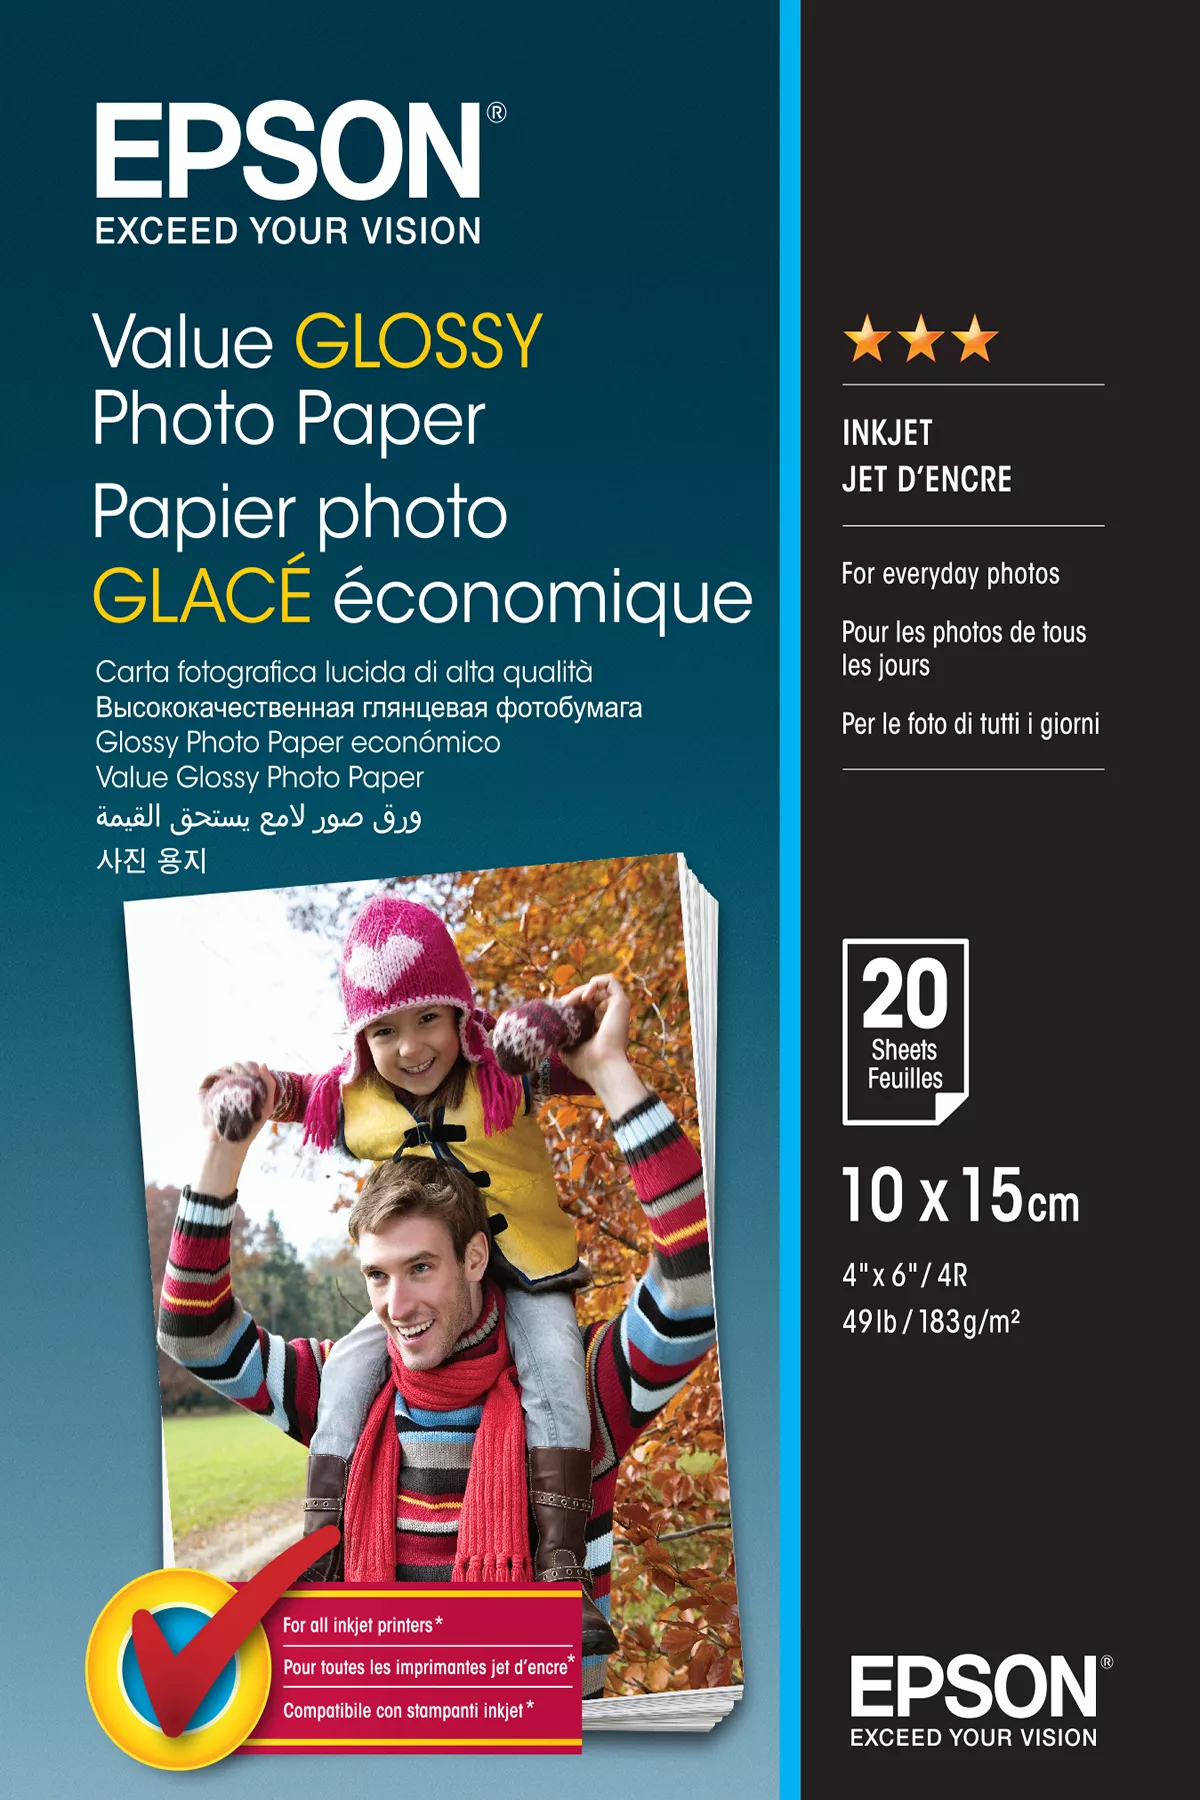 Vente Epson Value Glossy Photo Paper - 10x15cm - 20 Feuilles au meilleur prix